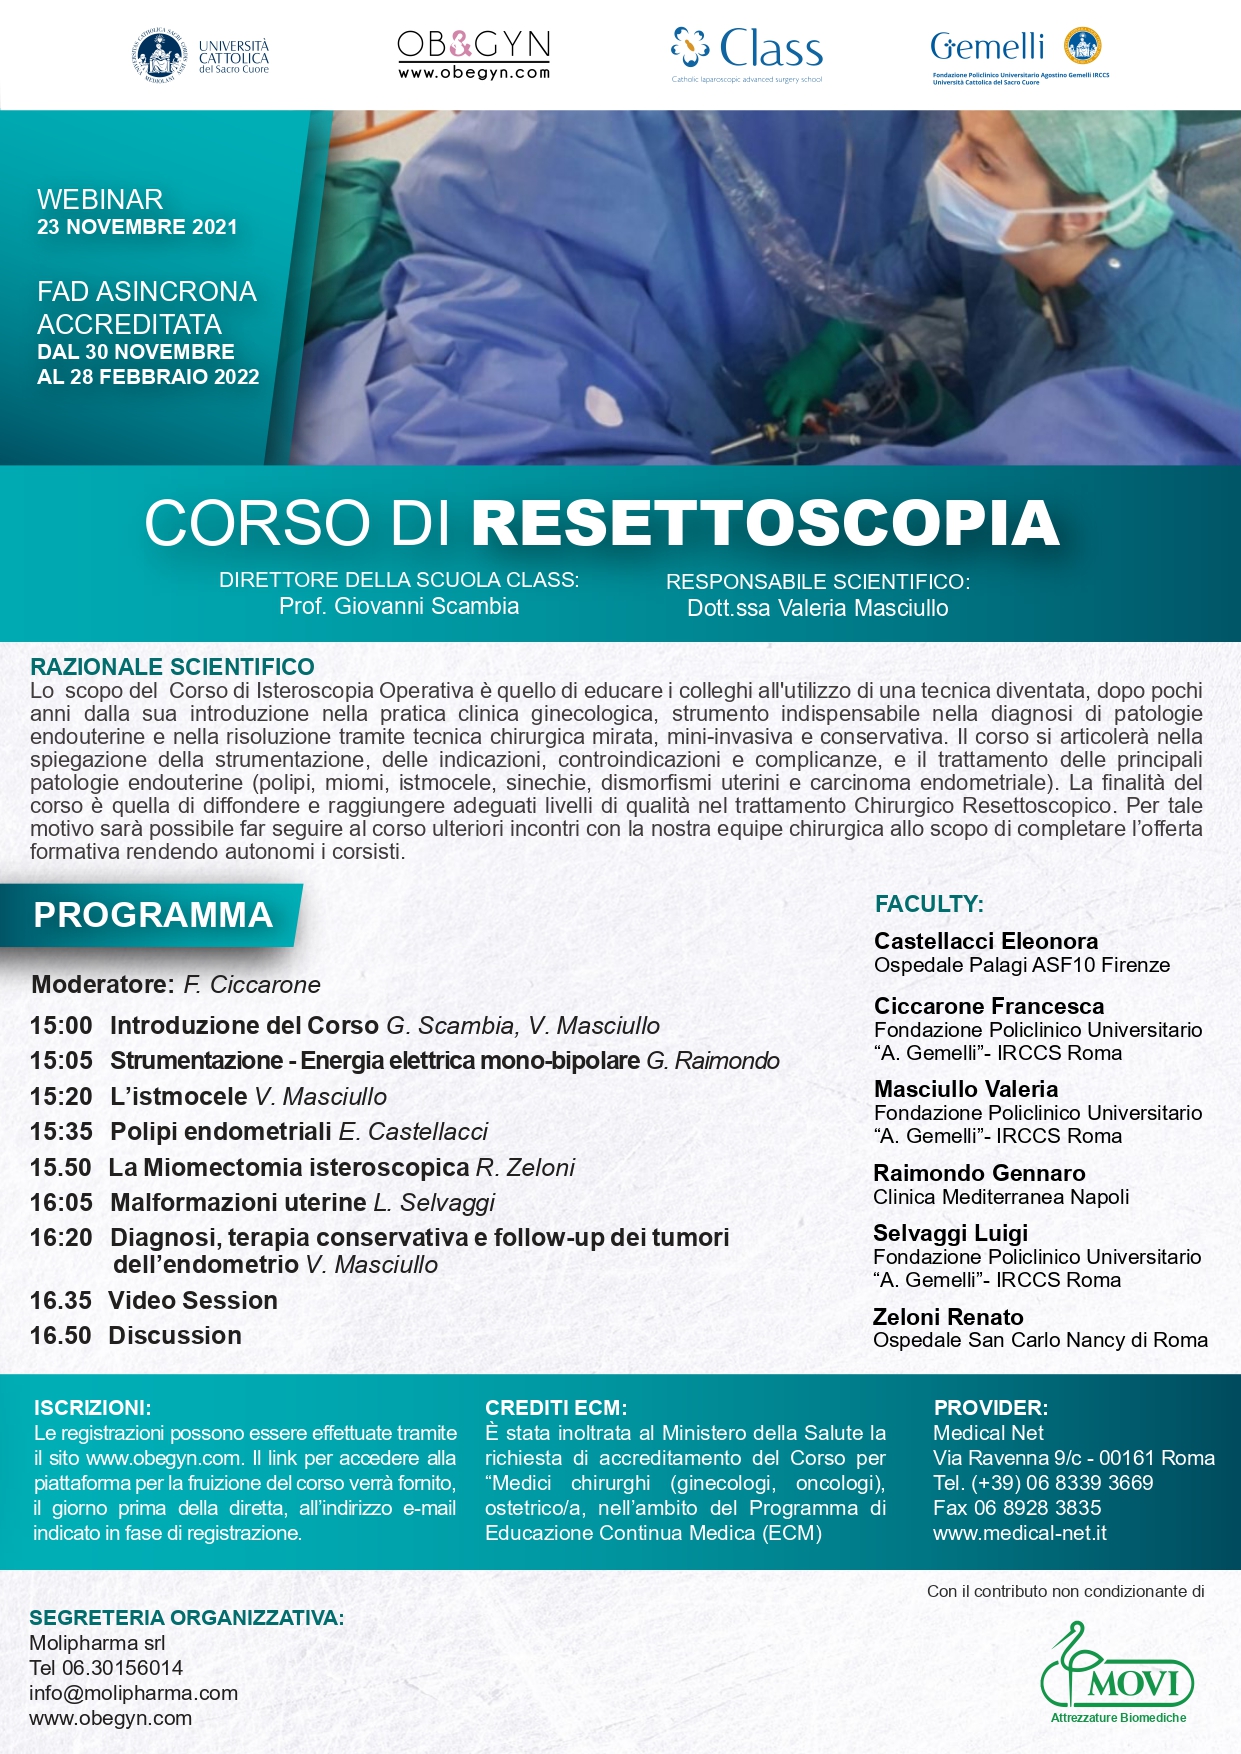 Programma CORSO DI RESETTOSCOPIA - FAD asincrona accreditata 30.11.2021 - 28.02.2022